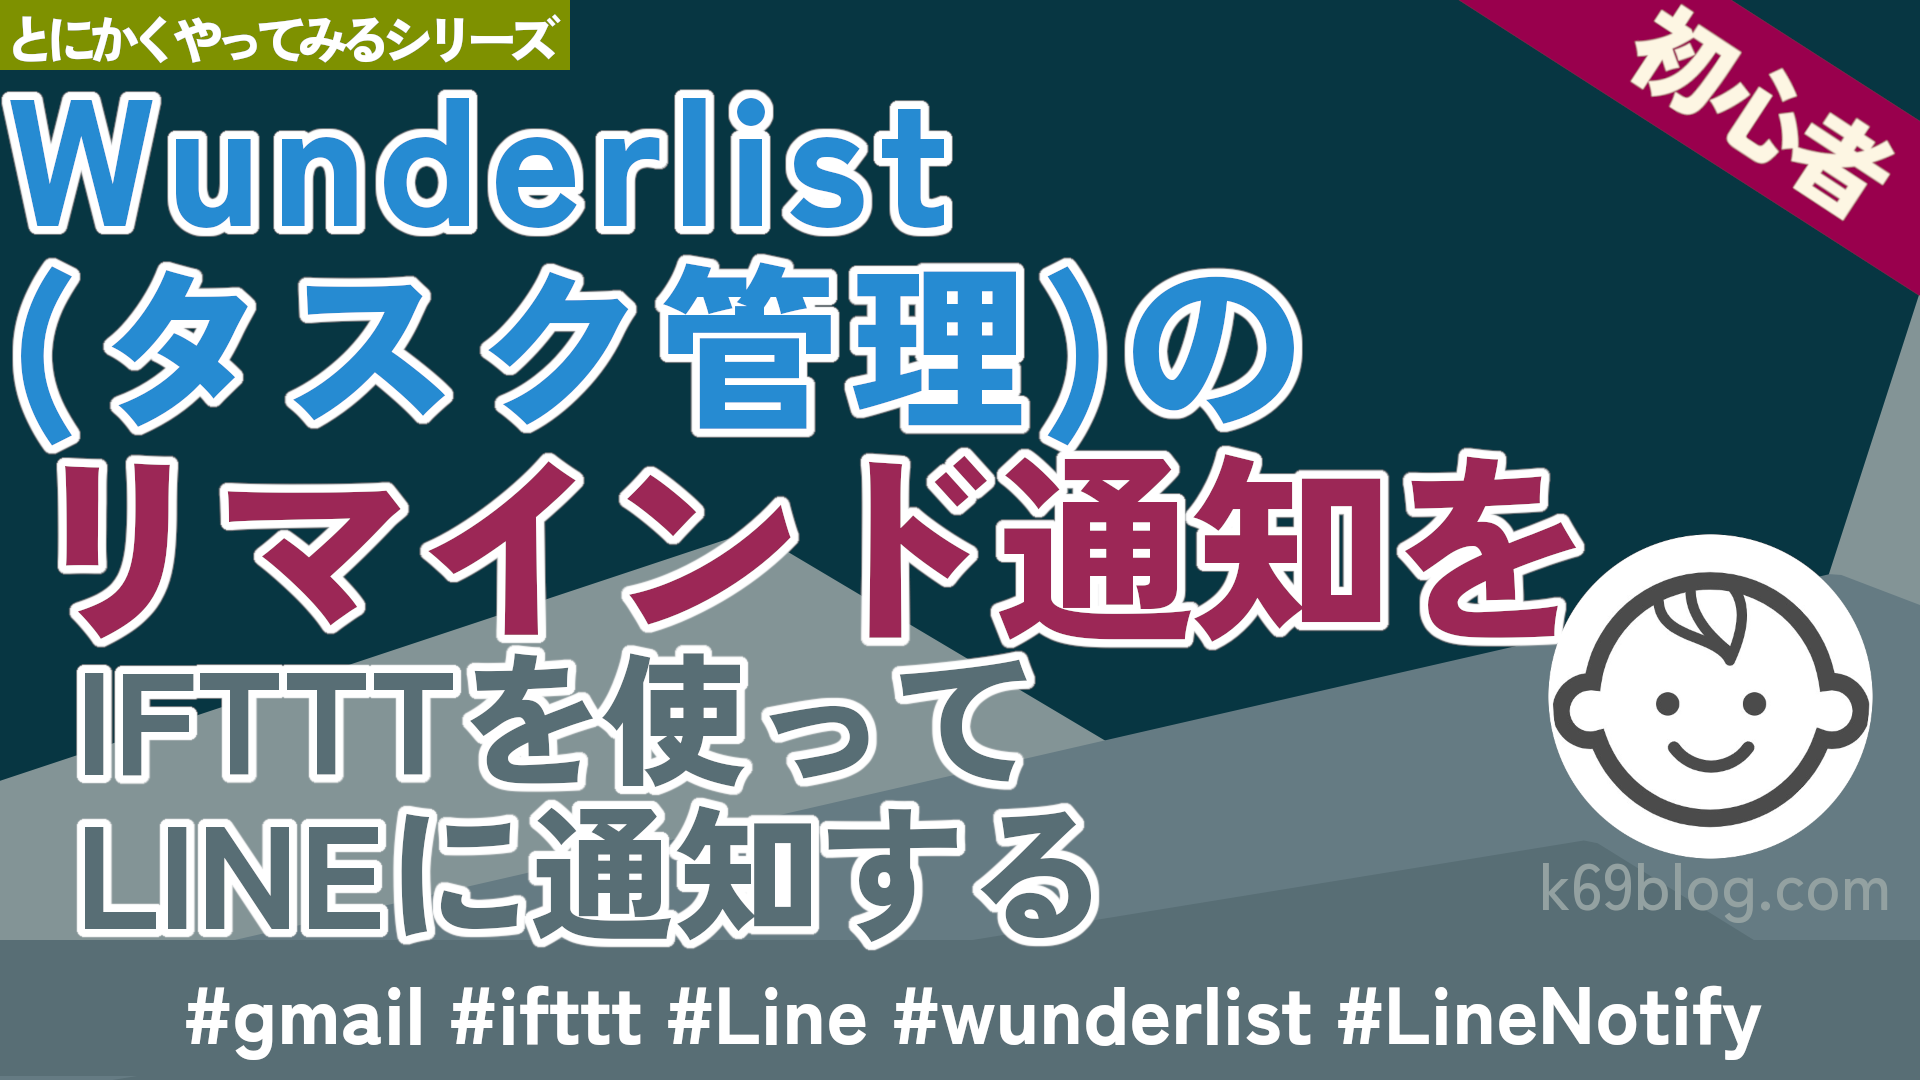 Cover Image for Wunderlist(タスク管理)のリマインド通知をIFTTTを使ってLINEに通知する